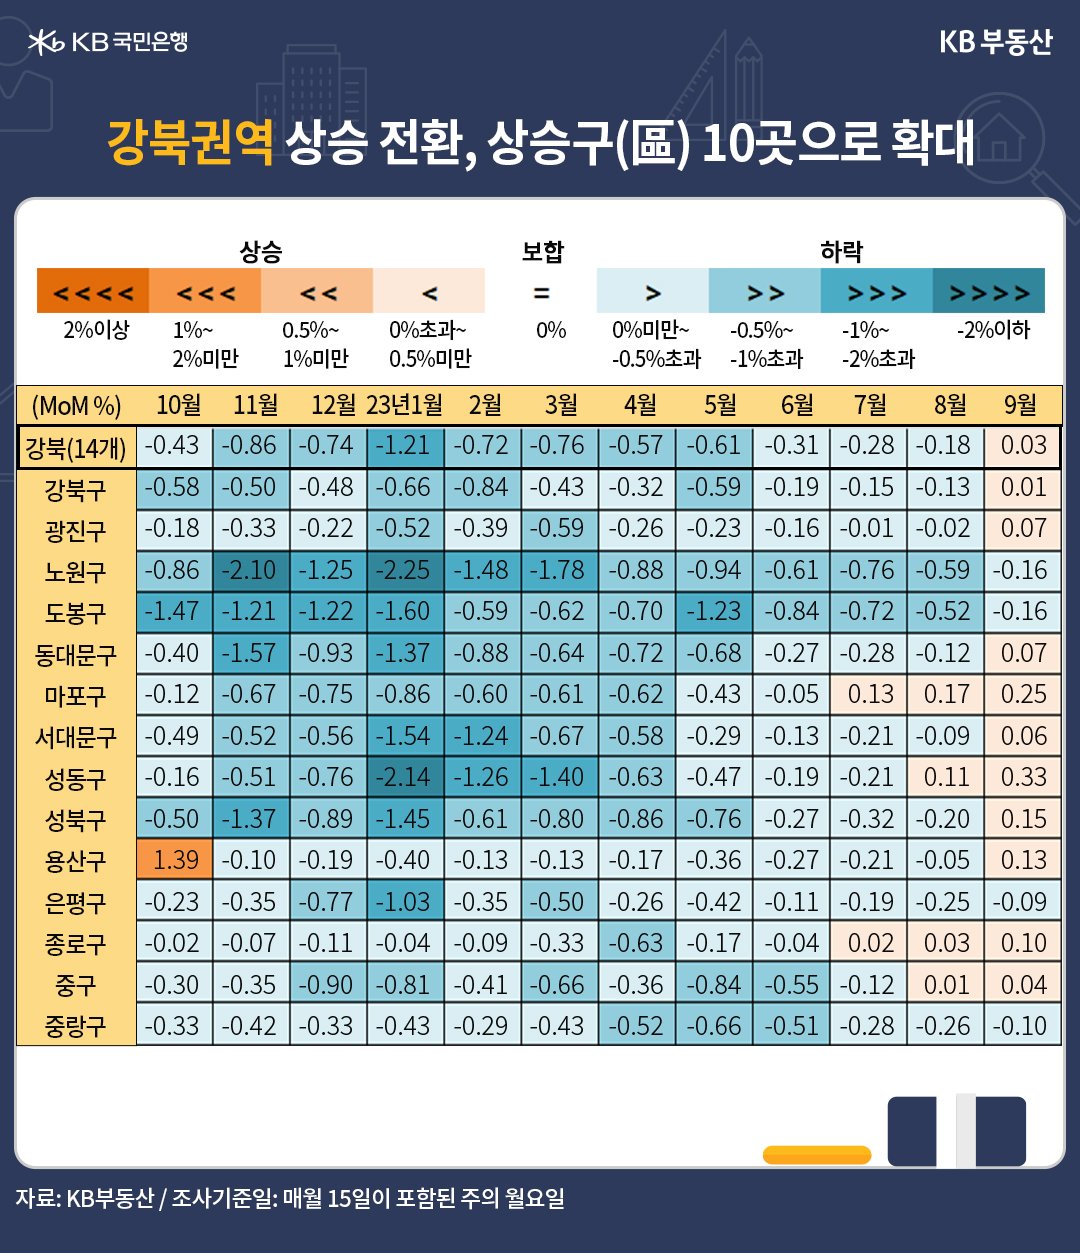 강북권역의 '주택가격 변동'을 나타낸 테이블, 푸른색이 진할수록 하락률이 큰 지역이며, 옅어질수록 회복지역이고, 붉은색은 상승전환 지역임, 강북권역은 0.03% 상승함.